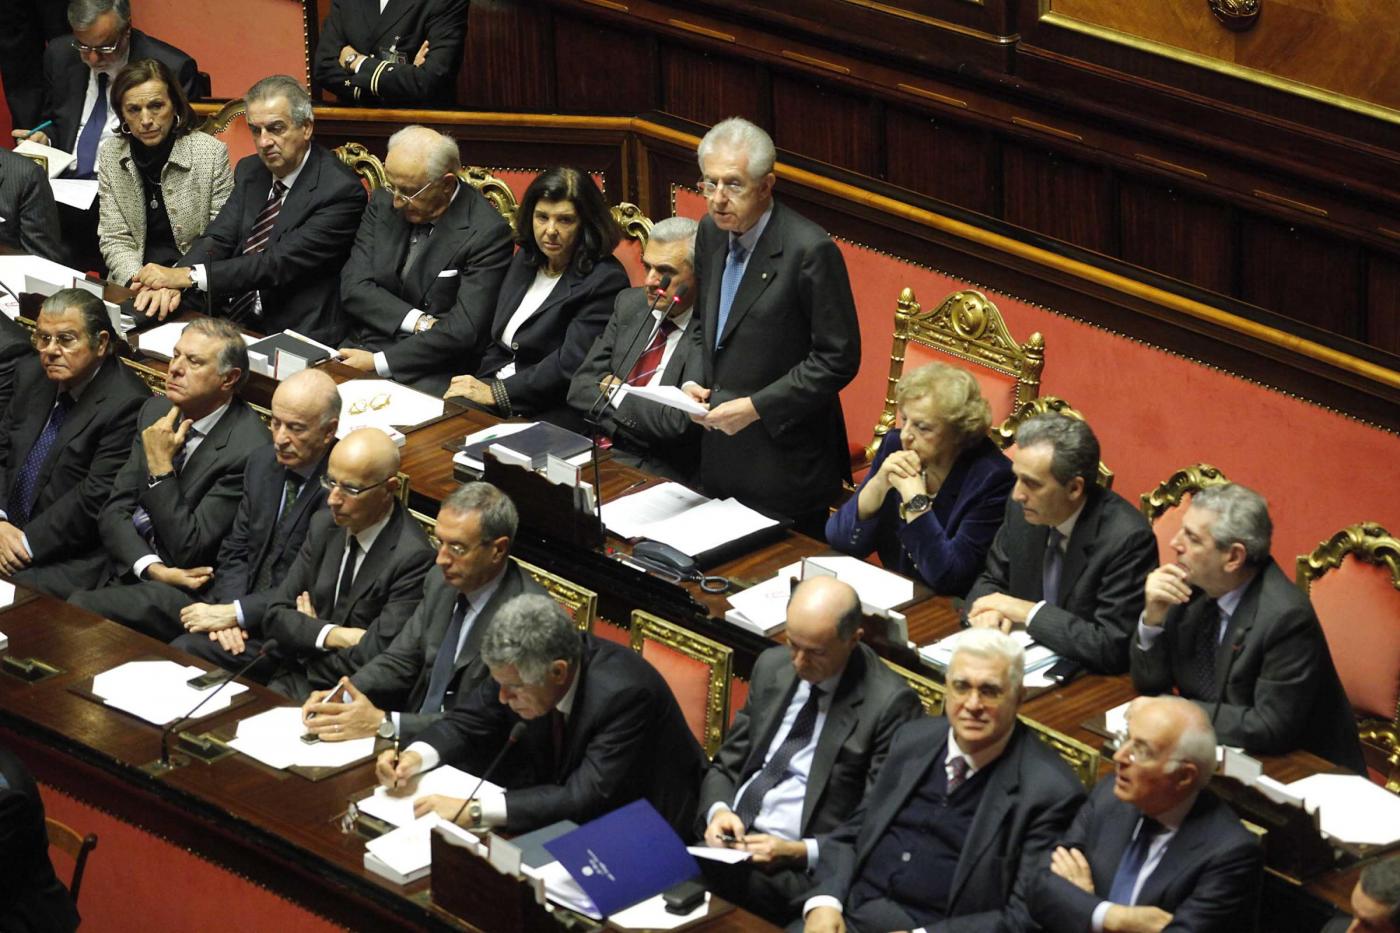 Governo Monti, è partita la fase due. Obiettivo crescita con liberalizzazioni e lavoro